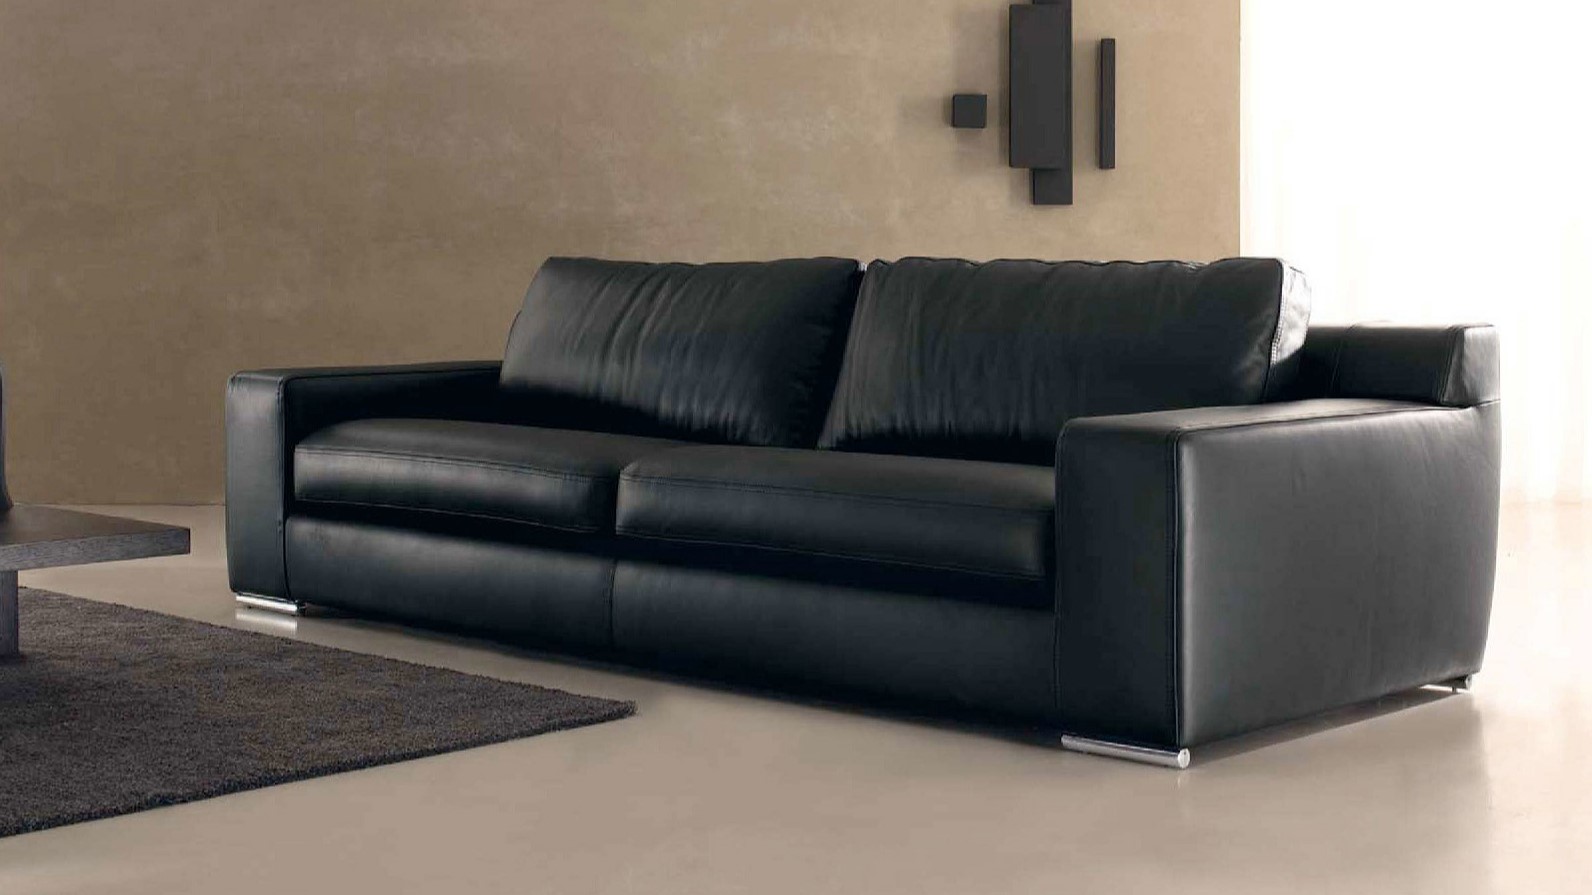 Черный диван с металлическими ножками можно успешно использовать в интерьере хай-тек